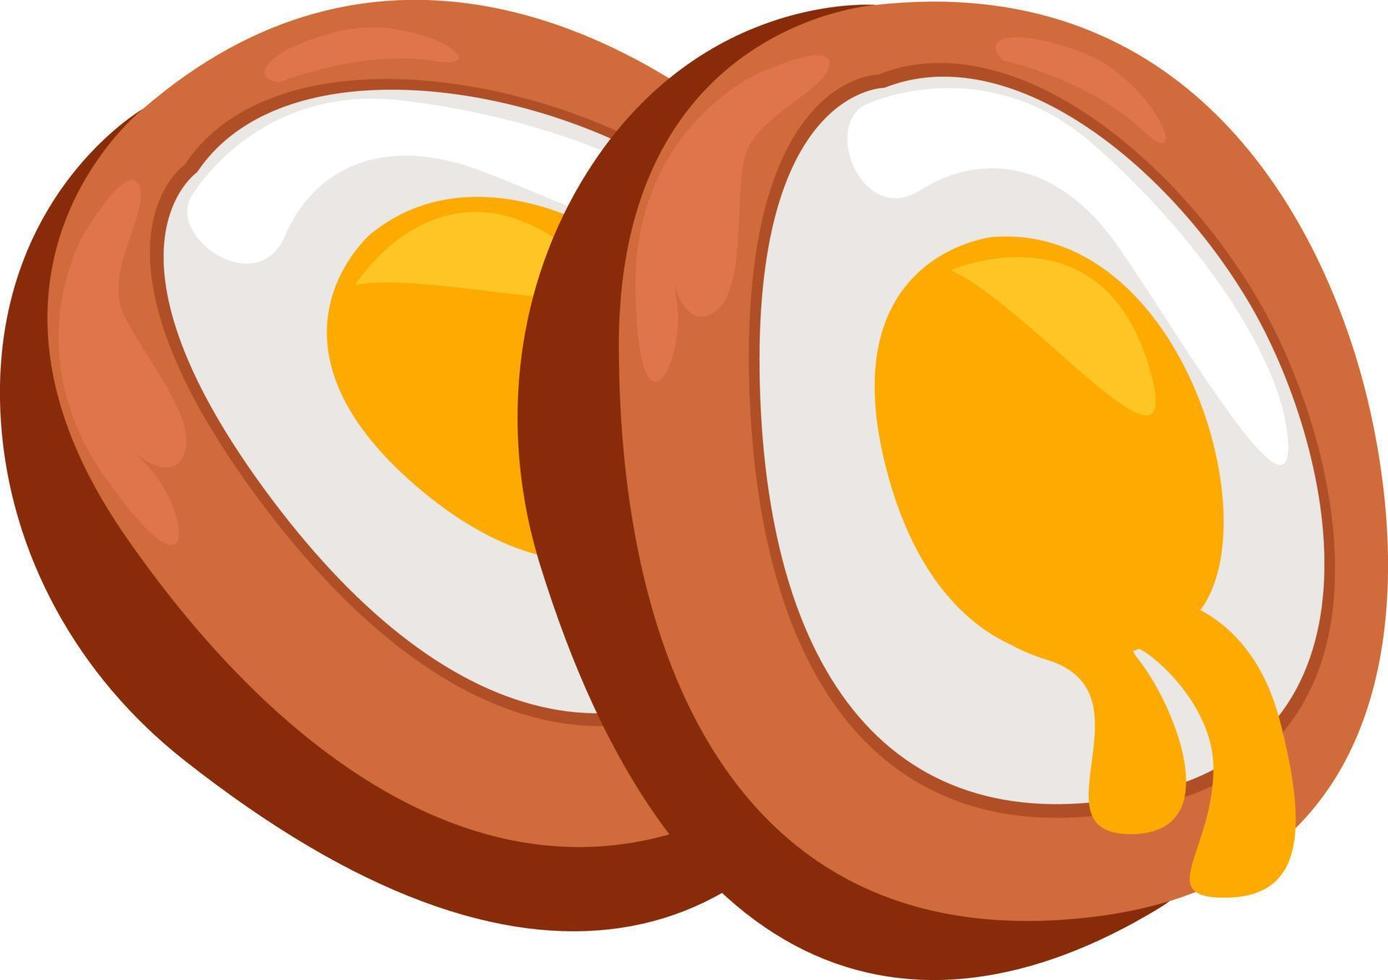 Eier zum Mittagessen, Illustration, Vektor auf weißem Hintergrund.